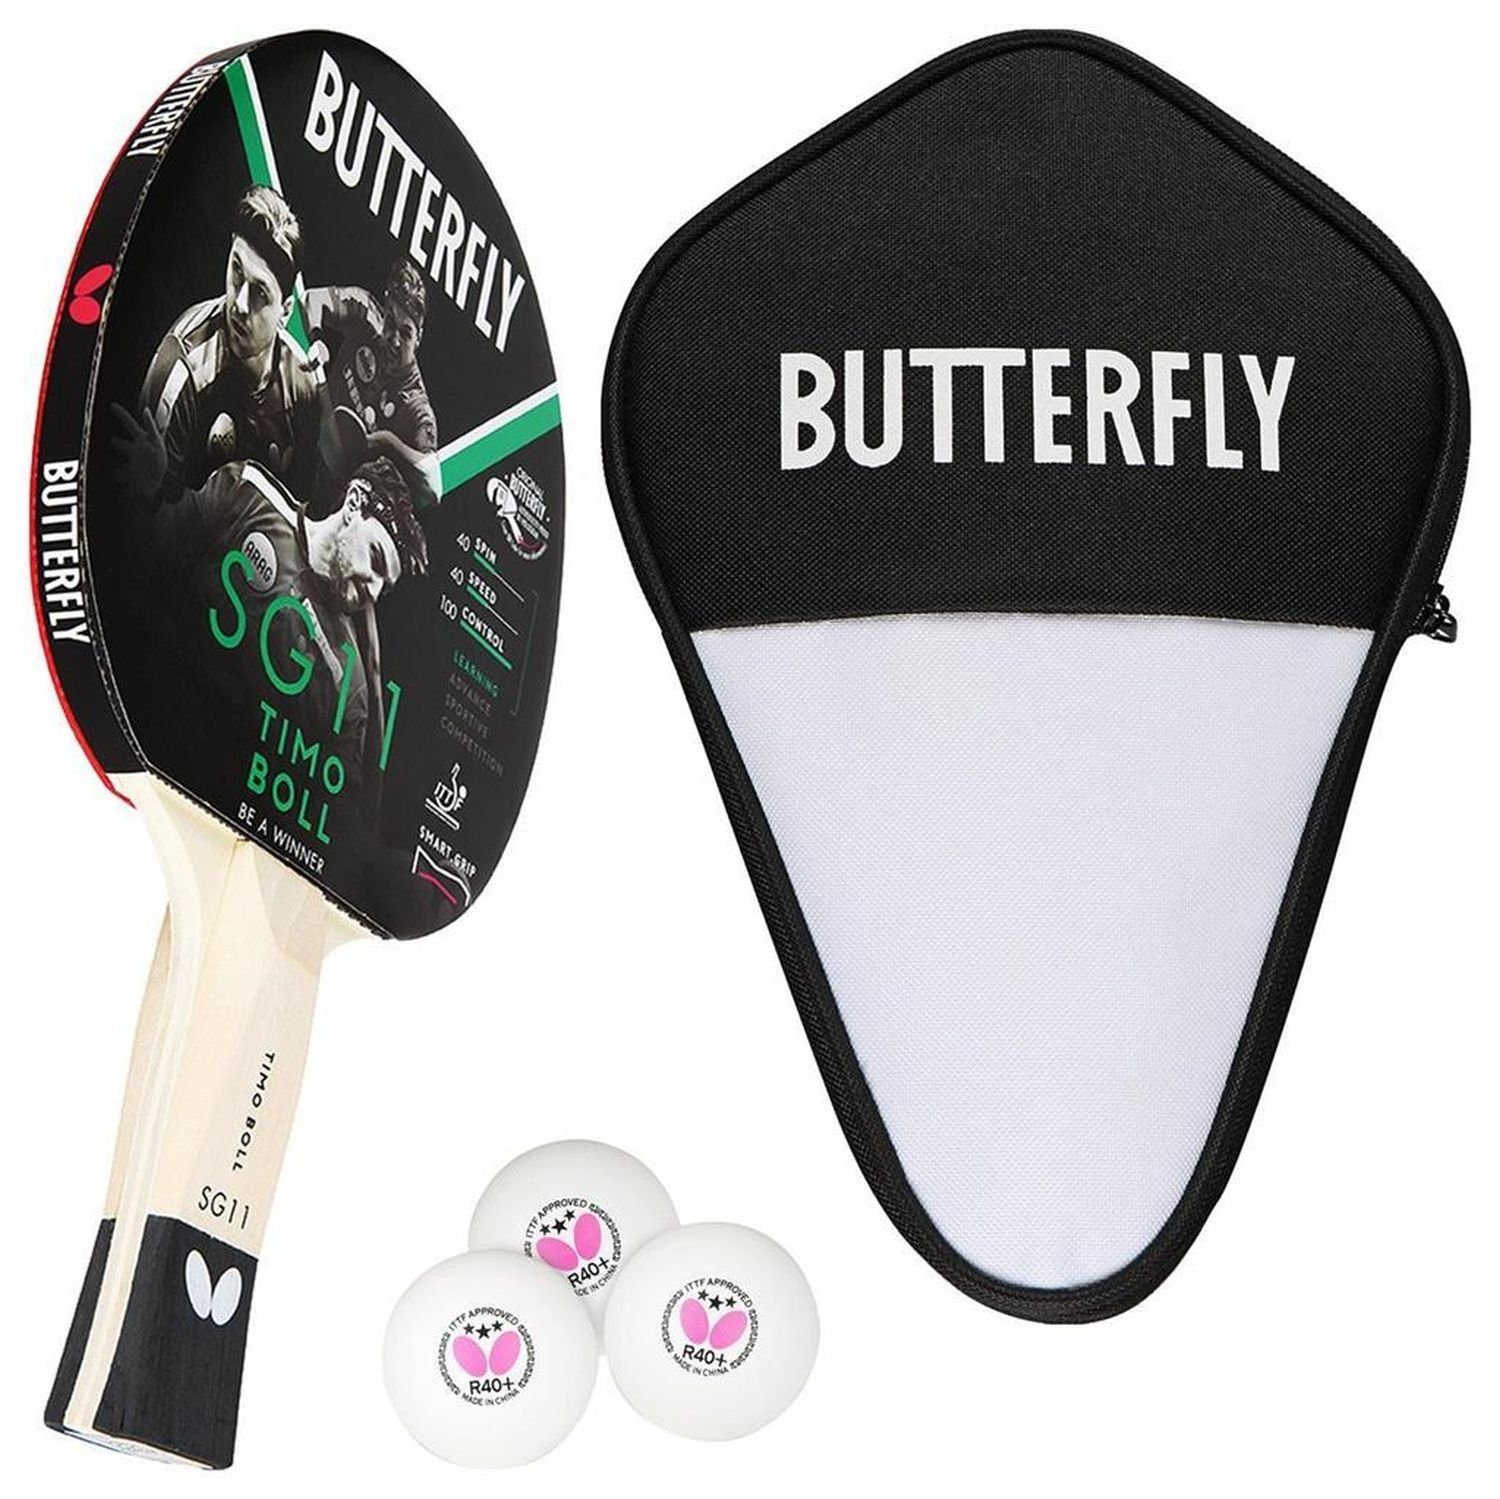 Butterfly Tischtennisschläger 1x Timo Boll SG11 + Cell Case 1 + Bälle, Tischtennis Schläger Set Tischtennisset Table Tennis Bat Racket